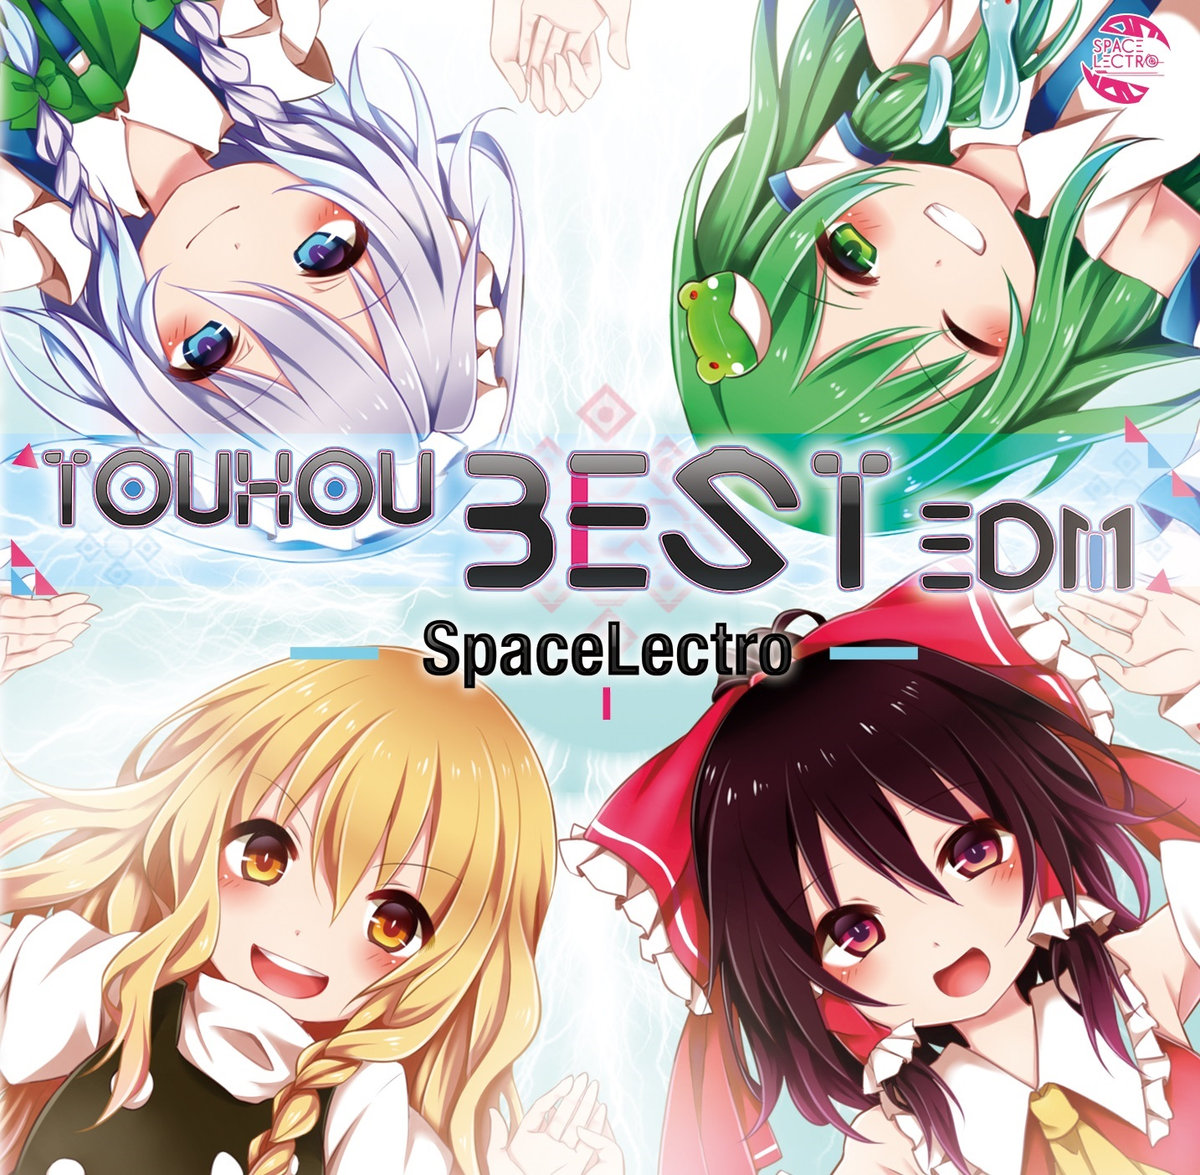 東方ベストedm Spacelectro 黒岩サトシ Spacelectro Feat Various Touhou Music Database